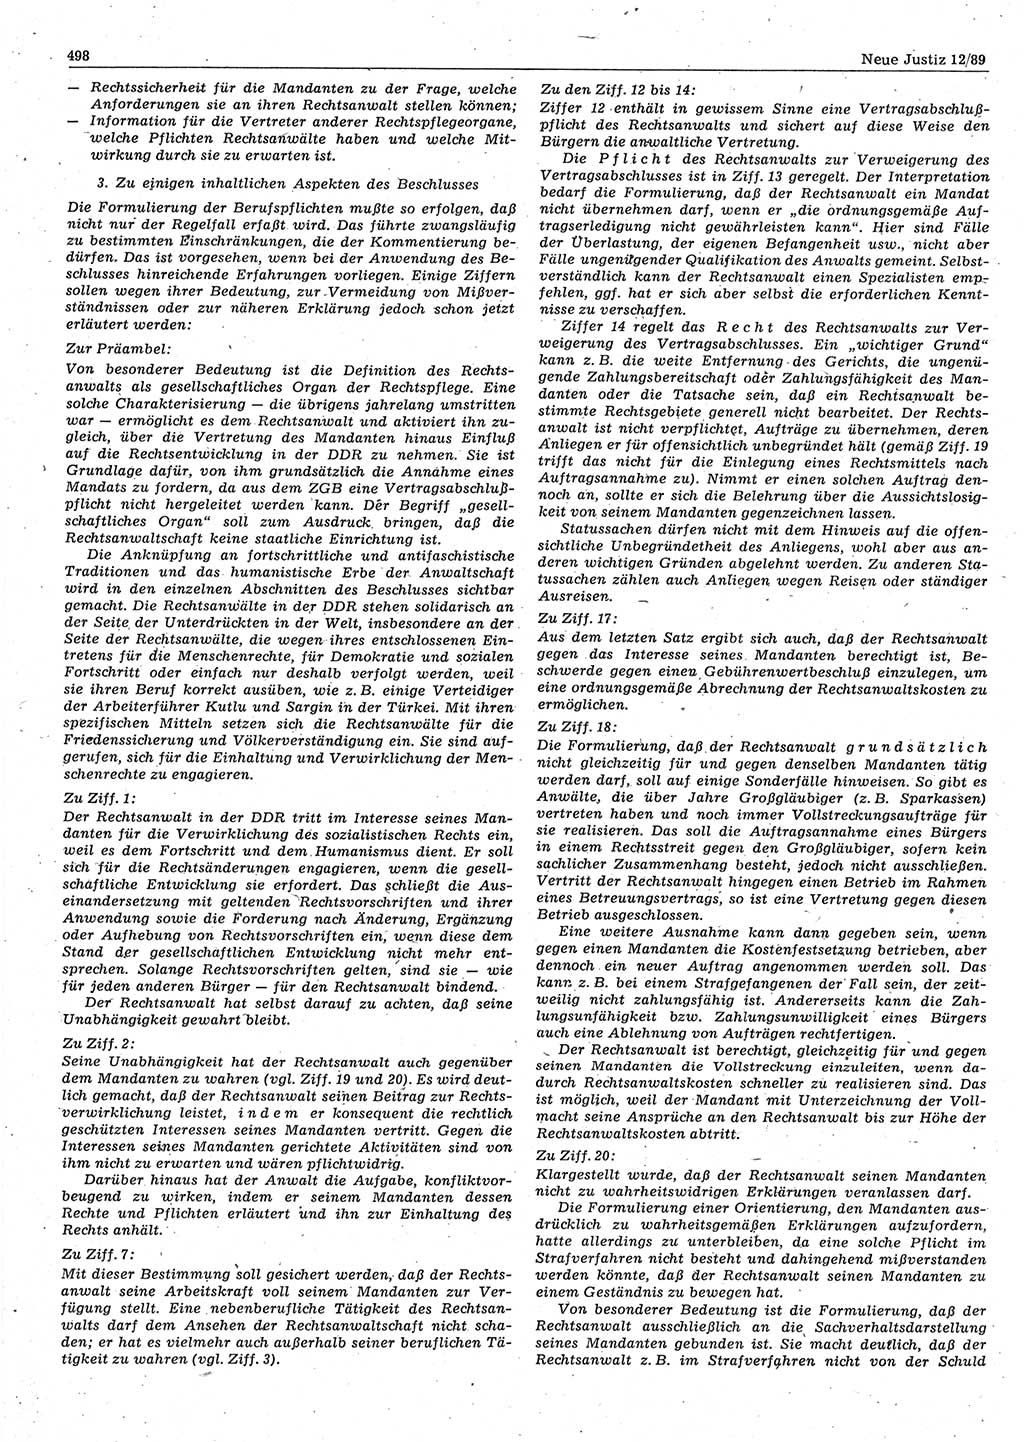 Neue Justiz (NJ), Zeitschrift für sozialistisches Recht und Gesetzlichkeit [Deutsche Demokratische Republik (DDR)], 43. Jahrgang 1989, Seite 498 (NJ DDR 1989, S. 498)